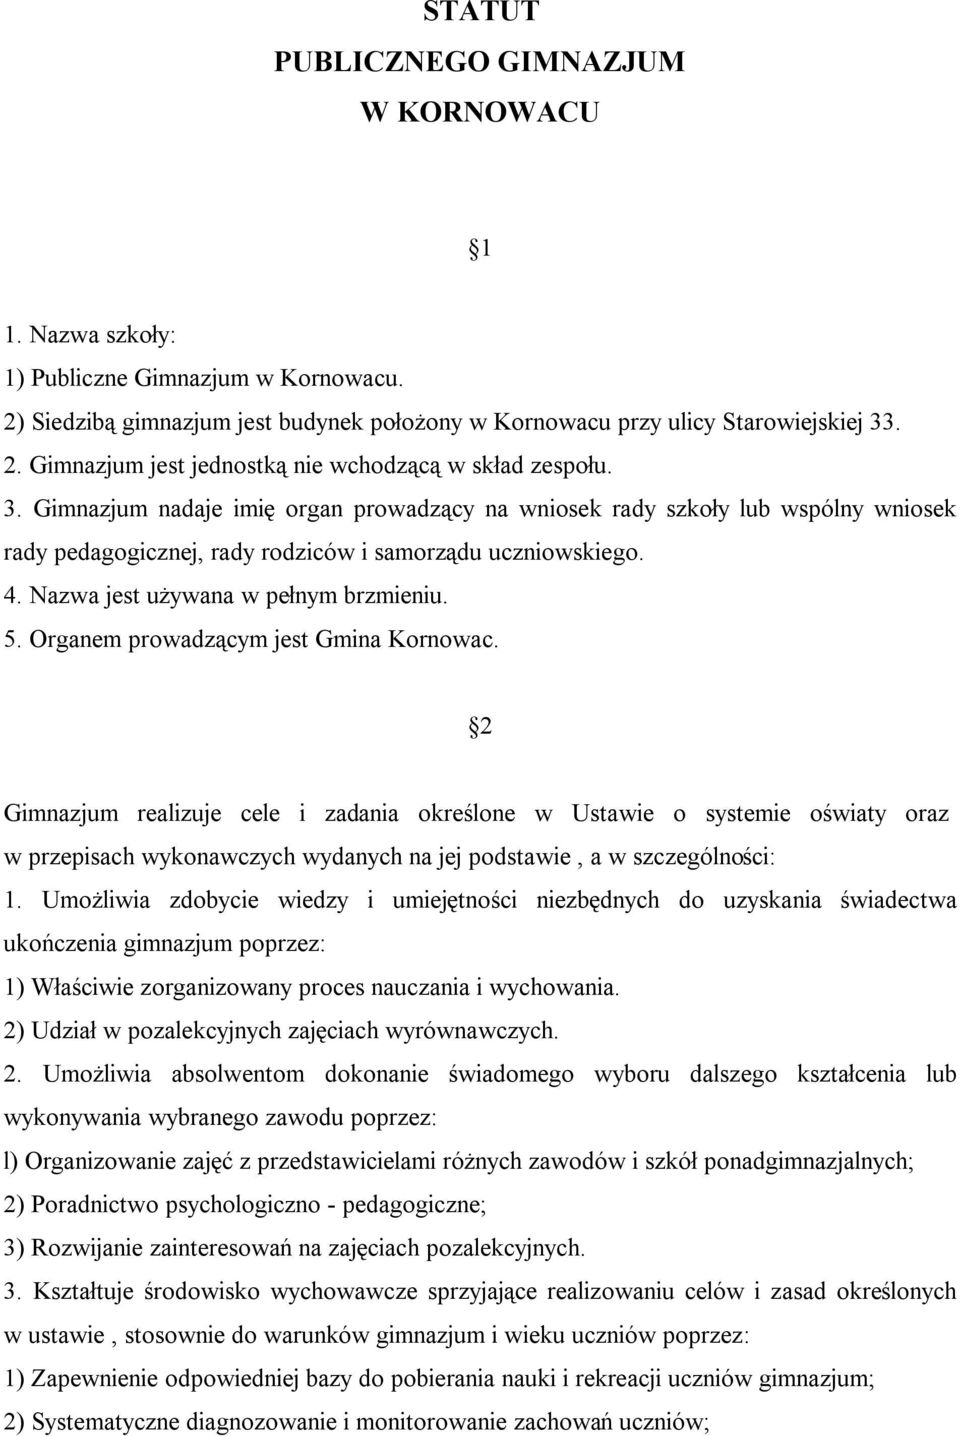 Organem prowadzącym jest Gmina Kornowac. 2 Gimnazjum realizuje cele i zadania określone w Ustawie o systemie oświaty oraz w przepisach wykonawczych wydanych na jej podstawie, a w szczególności: 1.